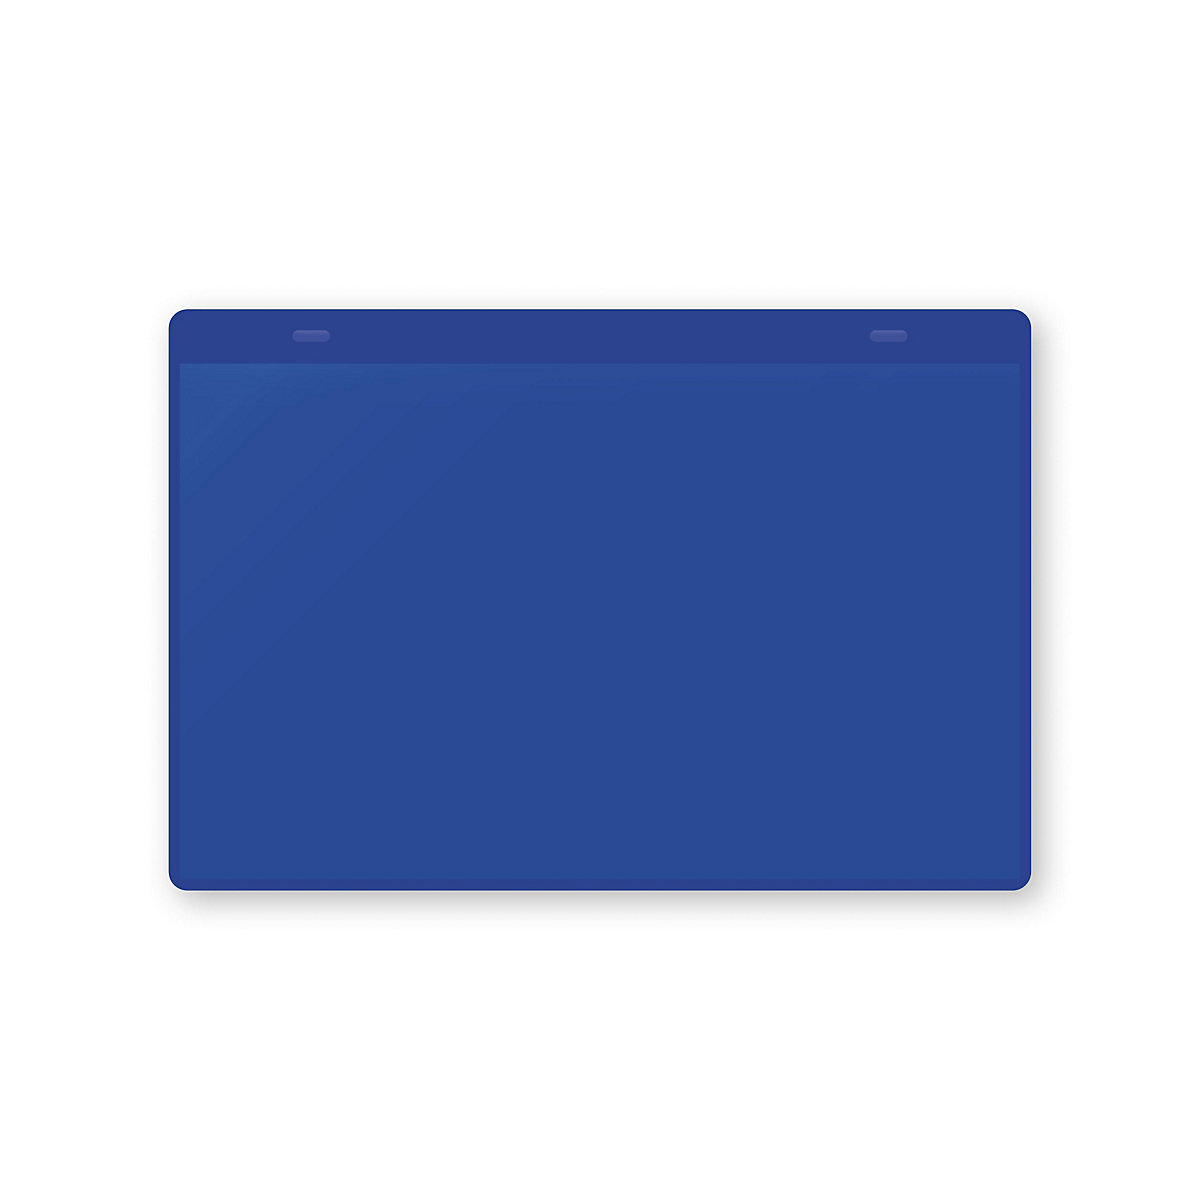 Öntapadó dokumentumtartó tasakok, DIN A5, fekvő, cs. e. 10 db, kék